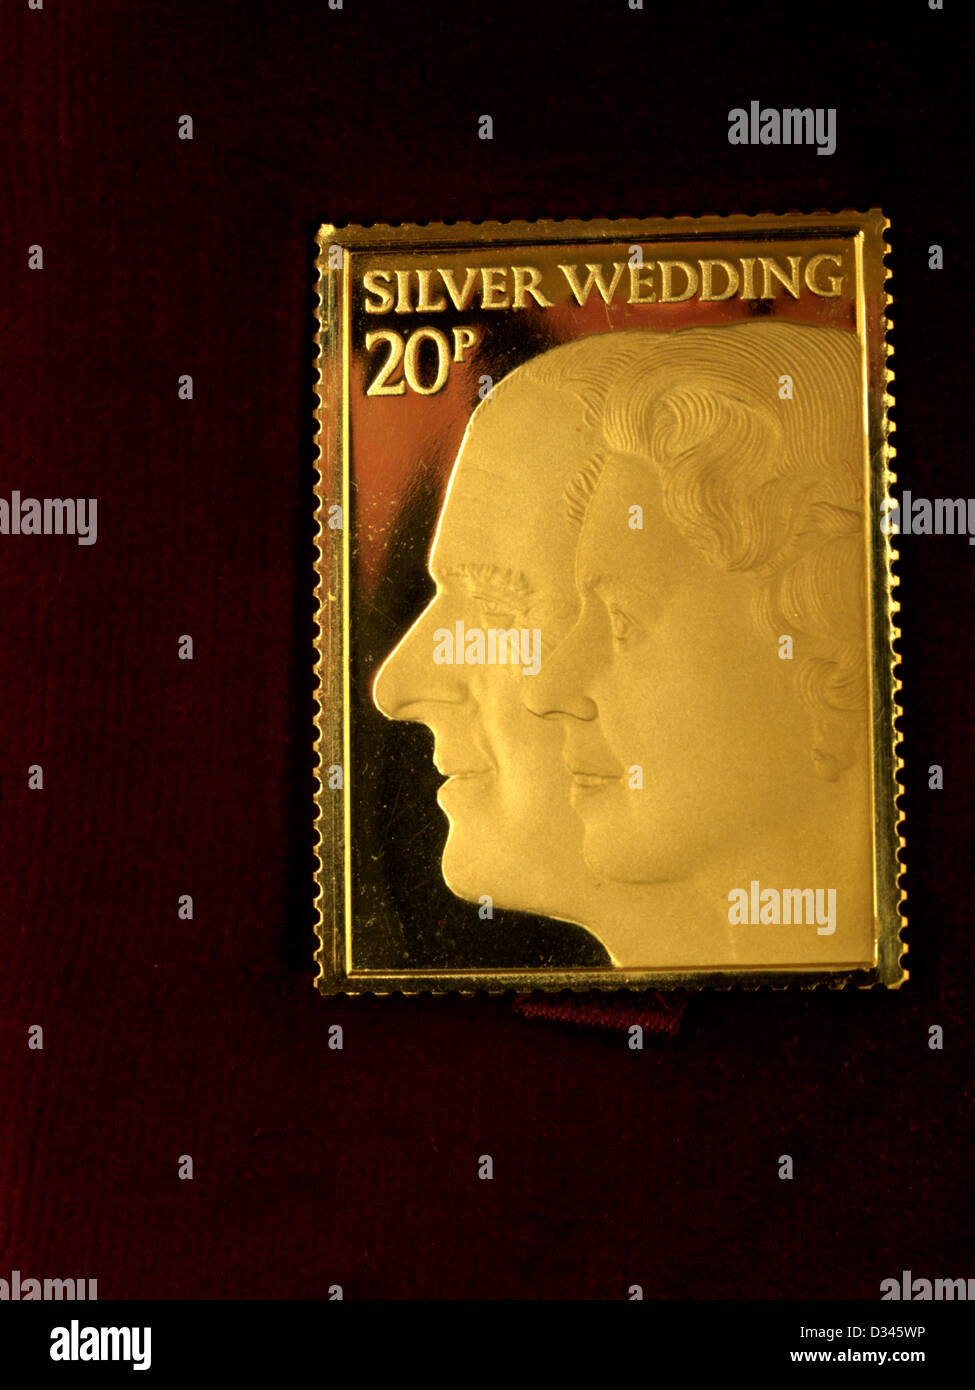 Zum Gedenken an Königin Elizabeth II und der Herzog von Edinburgh Silberhochzeit Jahrestag Markenzeichen Replica Goldstempel Stockfoto